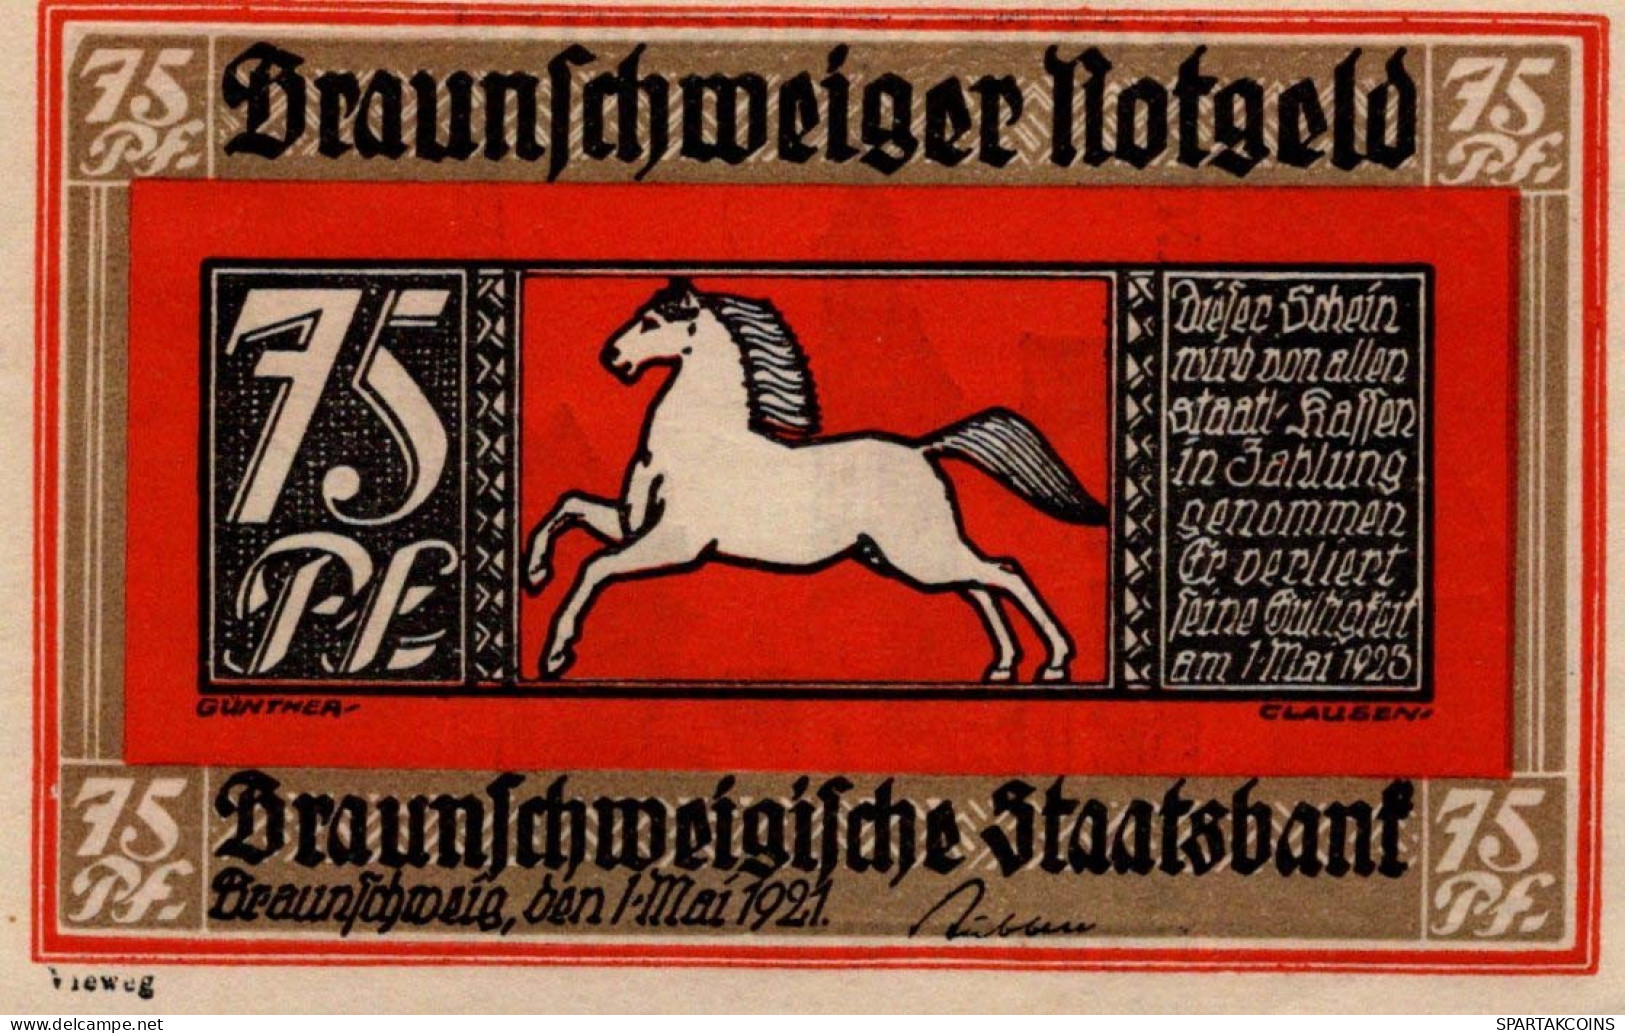 75 PFENNIG 1921 Stadt BRUNSWICK Brunswick UNC DEUTSCHLAND Notgeld #PA281 - [11] Local Banknote Issues